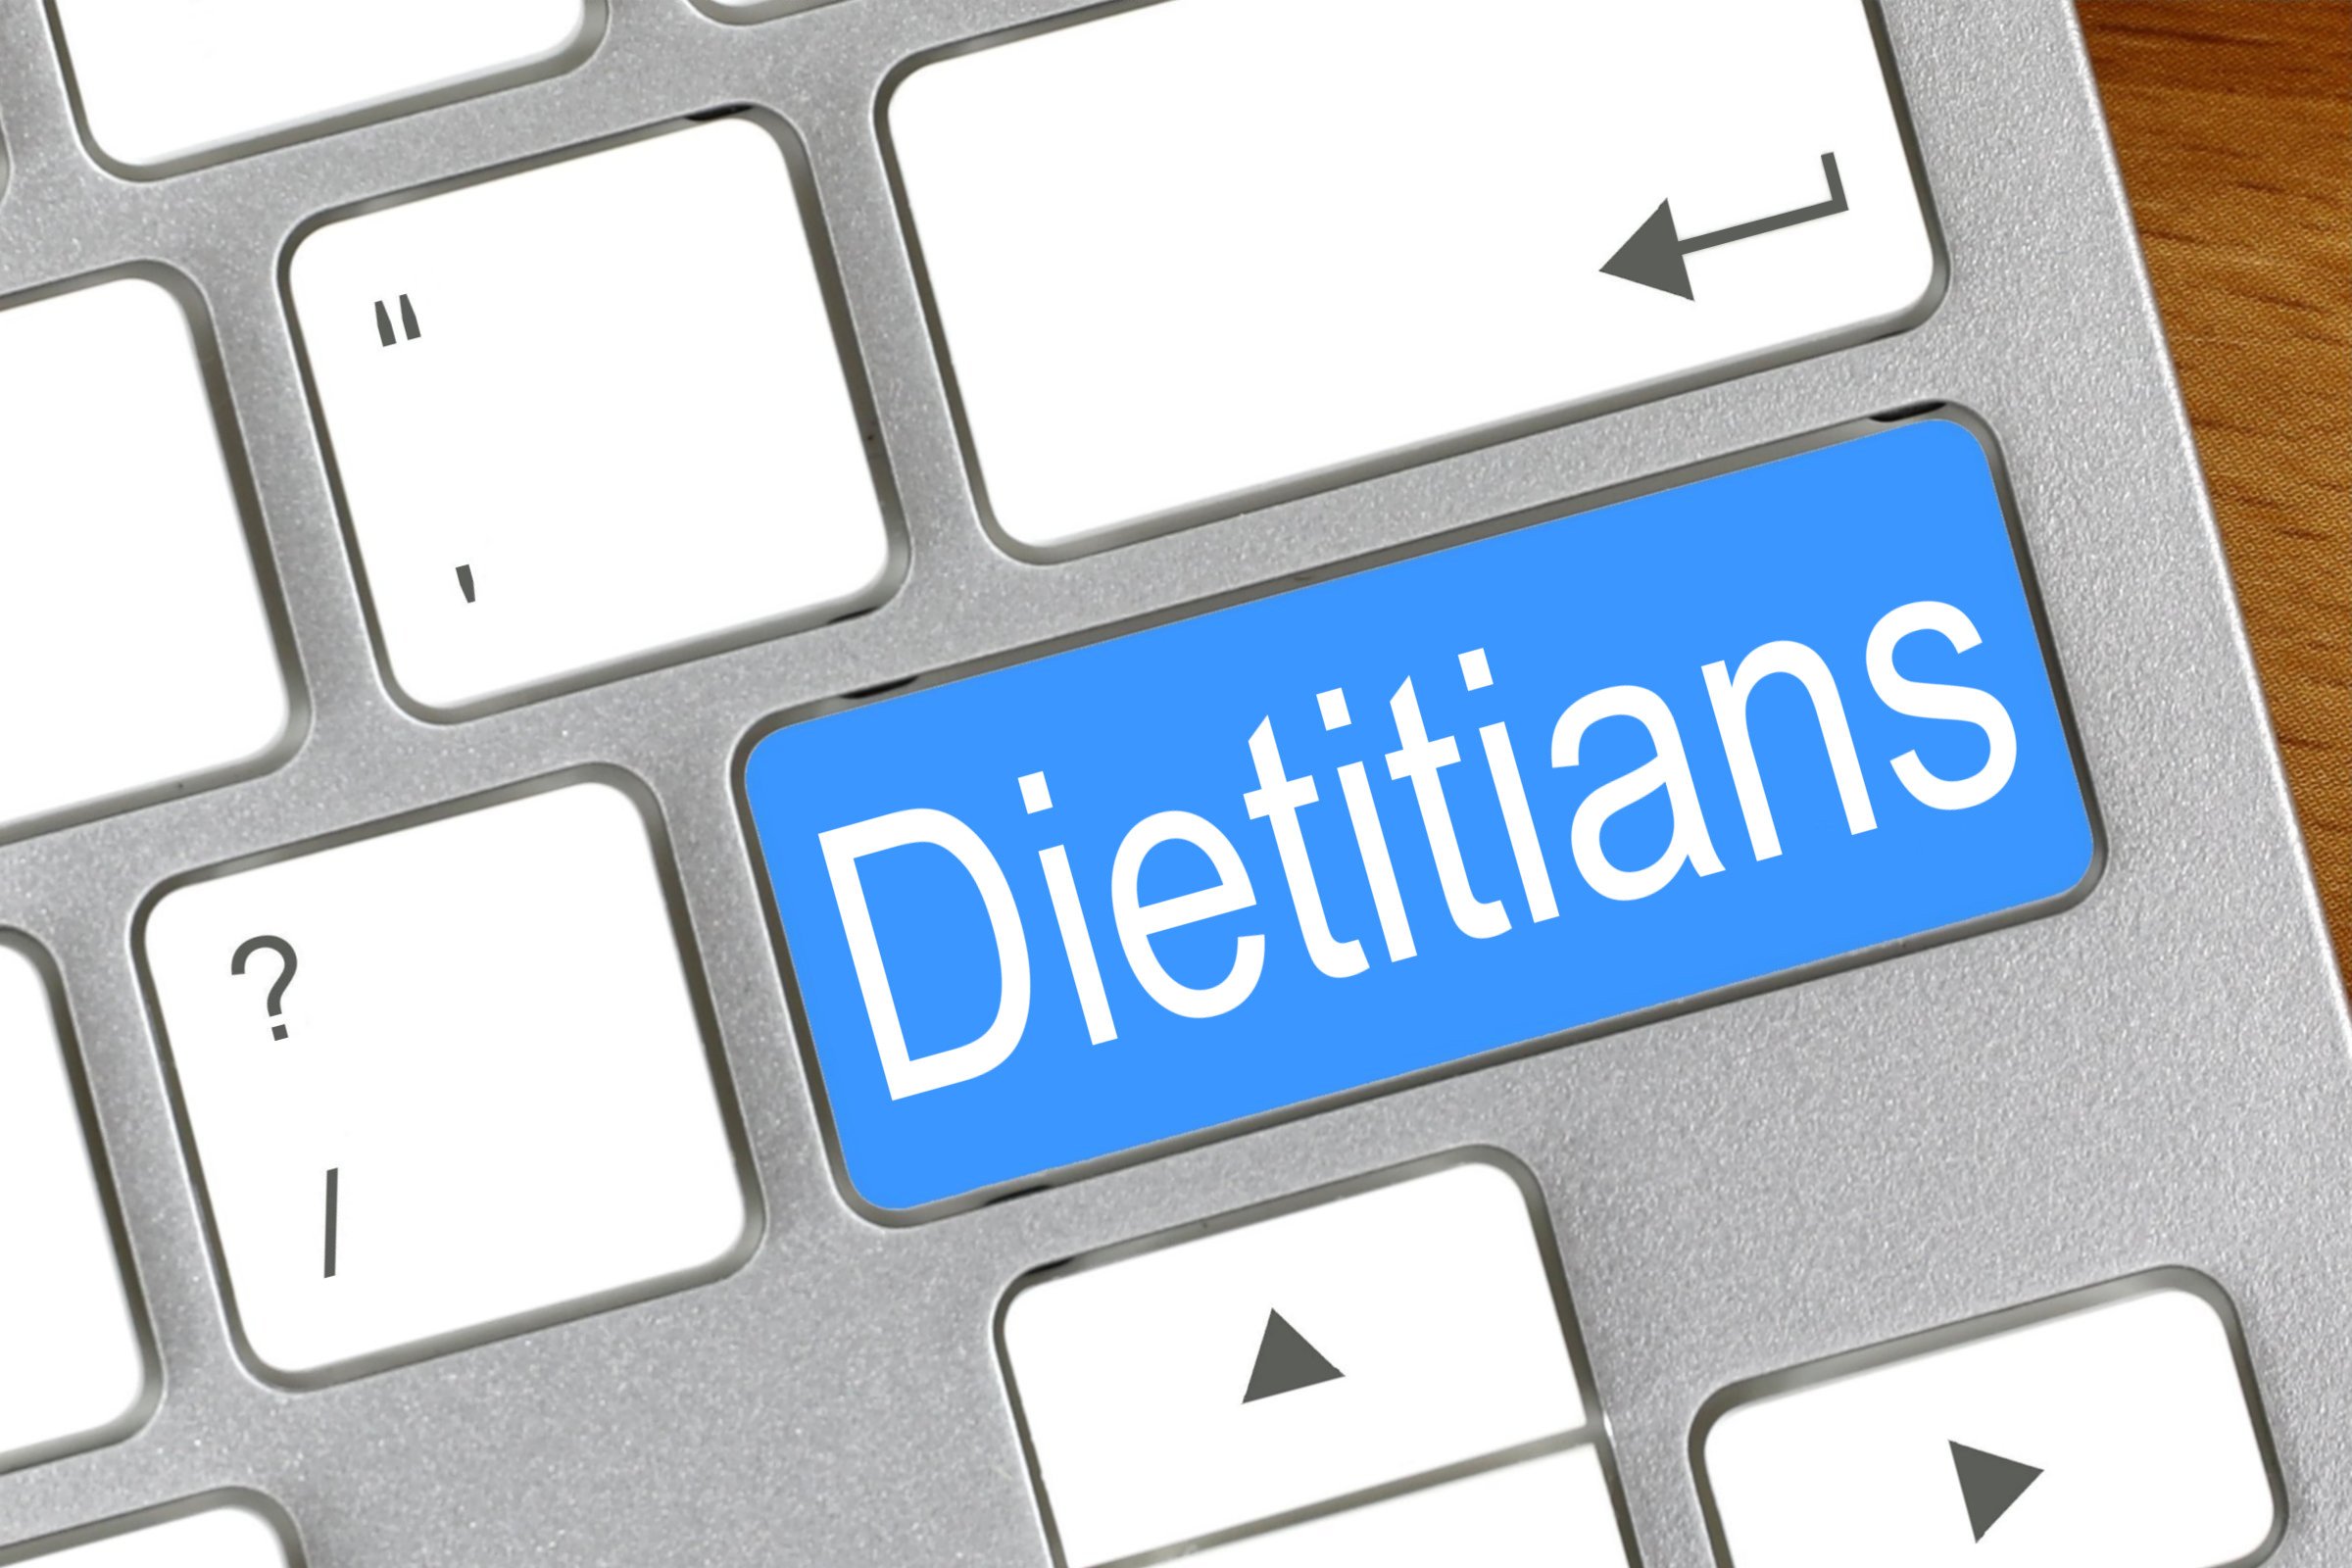 dietitians